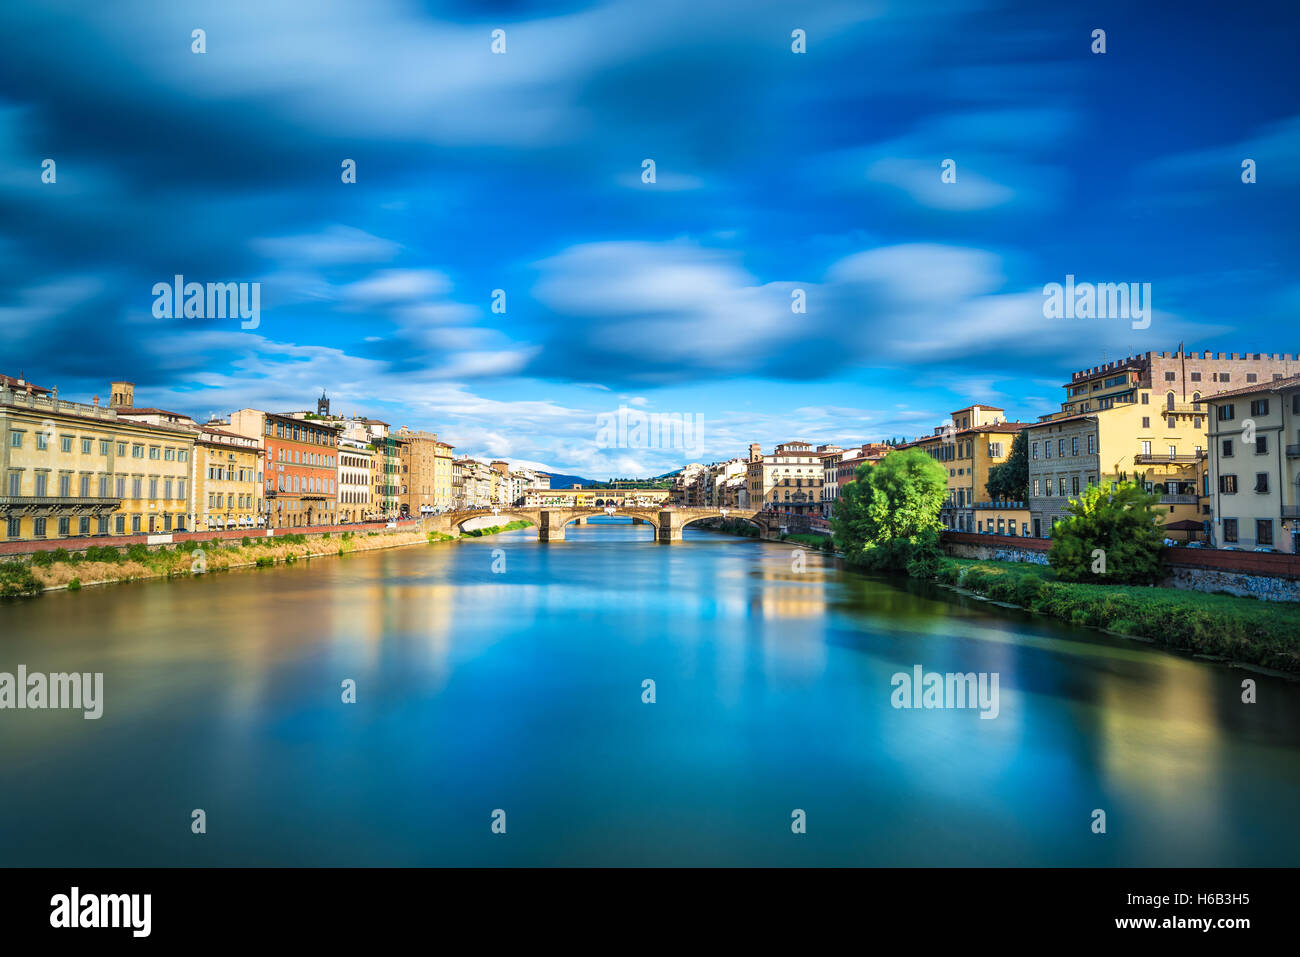 Florencia o Firenze, Santa Trinita y viejo puente sobre el río Arno, emblemático paisaje al atardecer con el reflejo. Toscana, Italia. Foto de stock